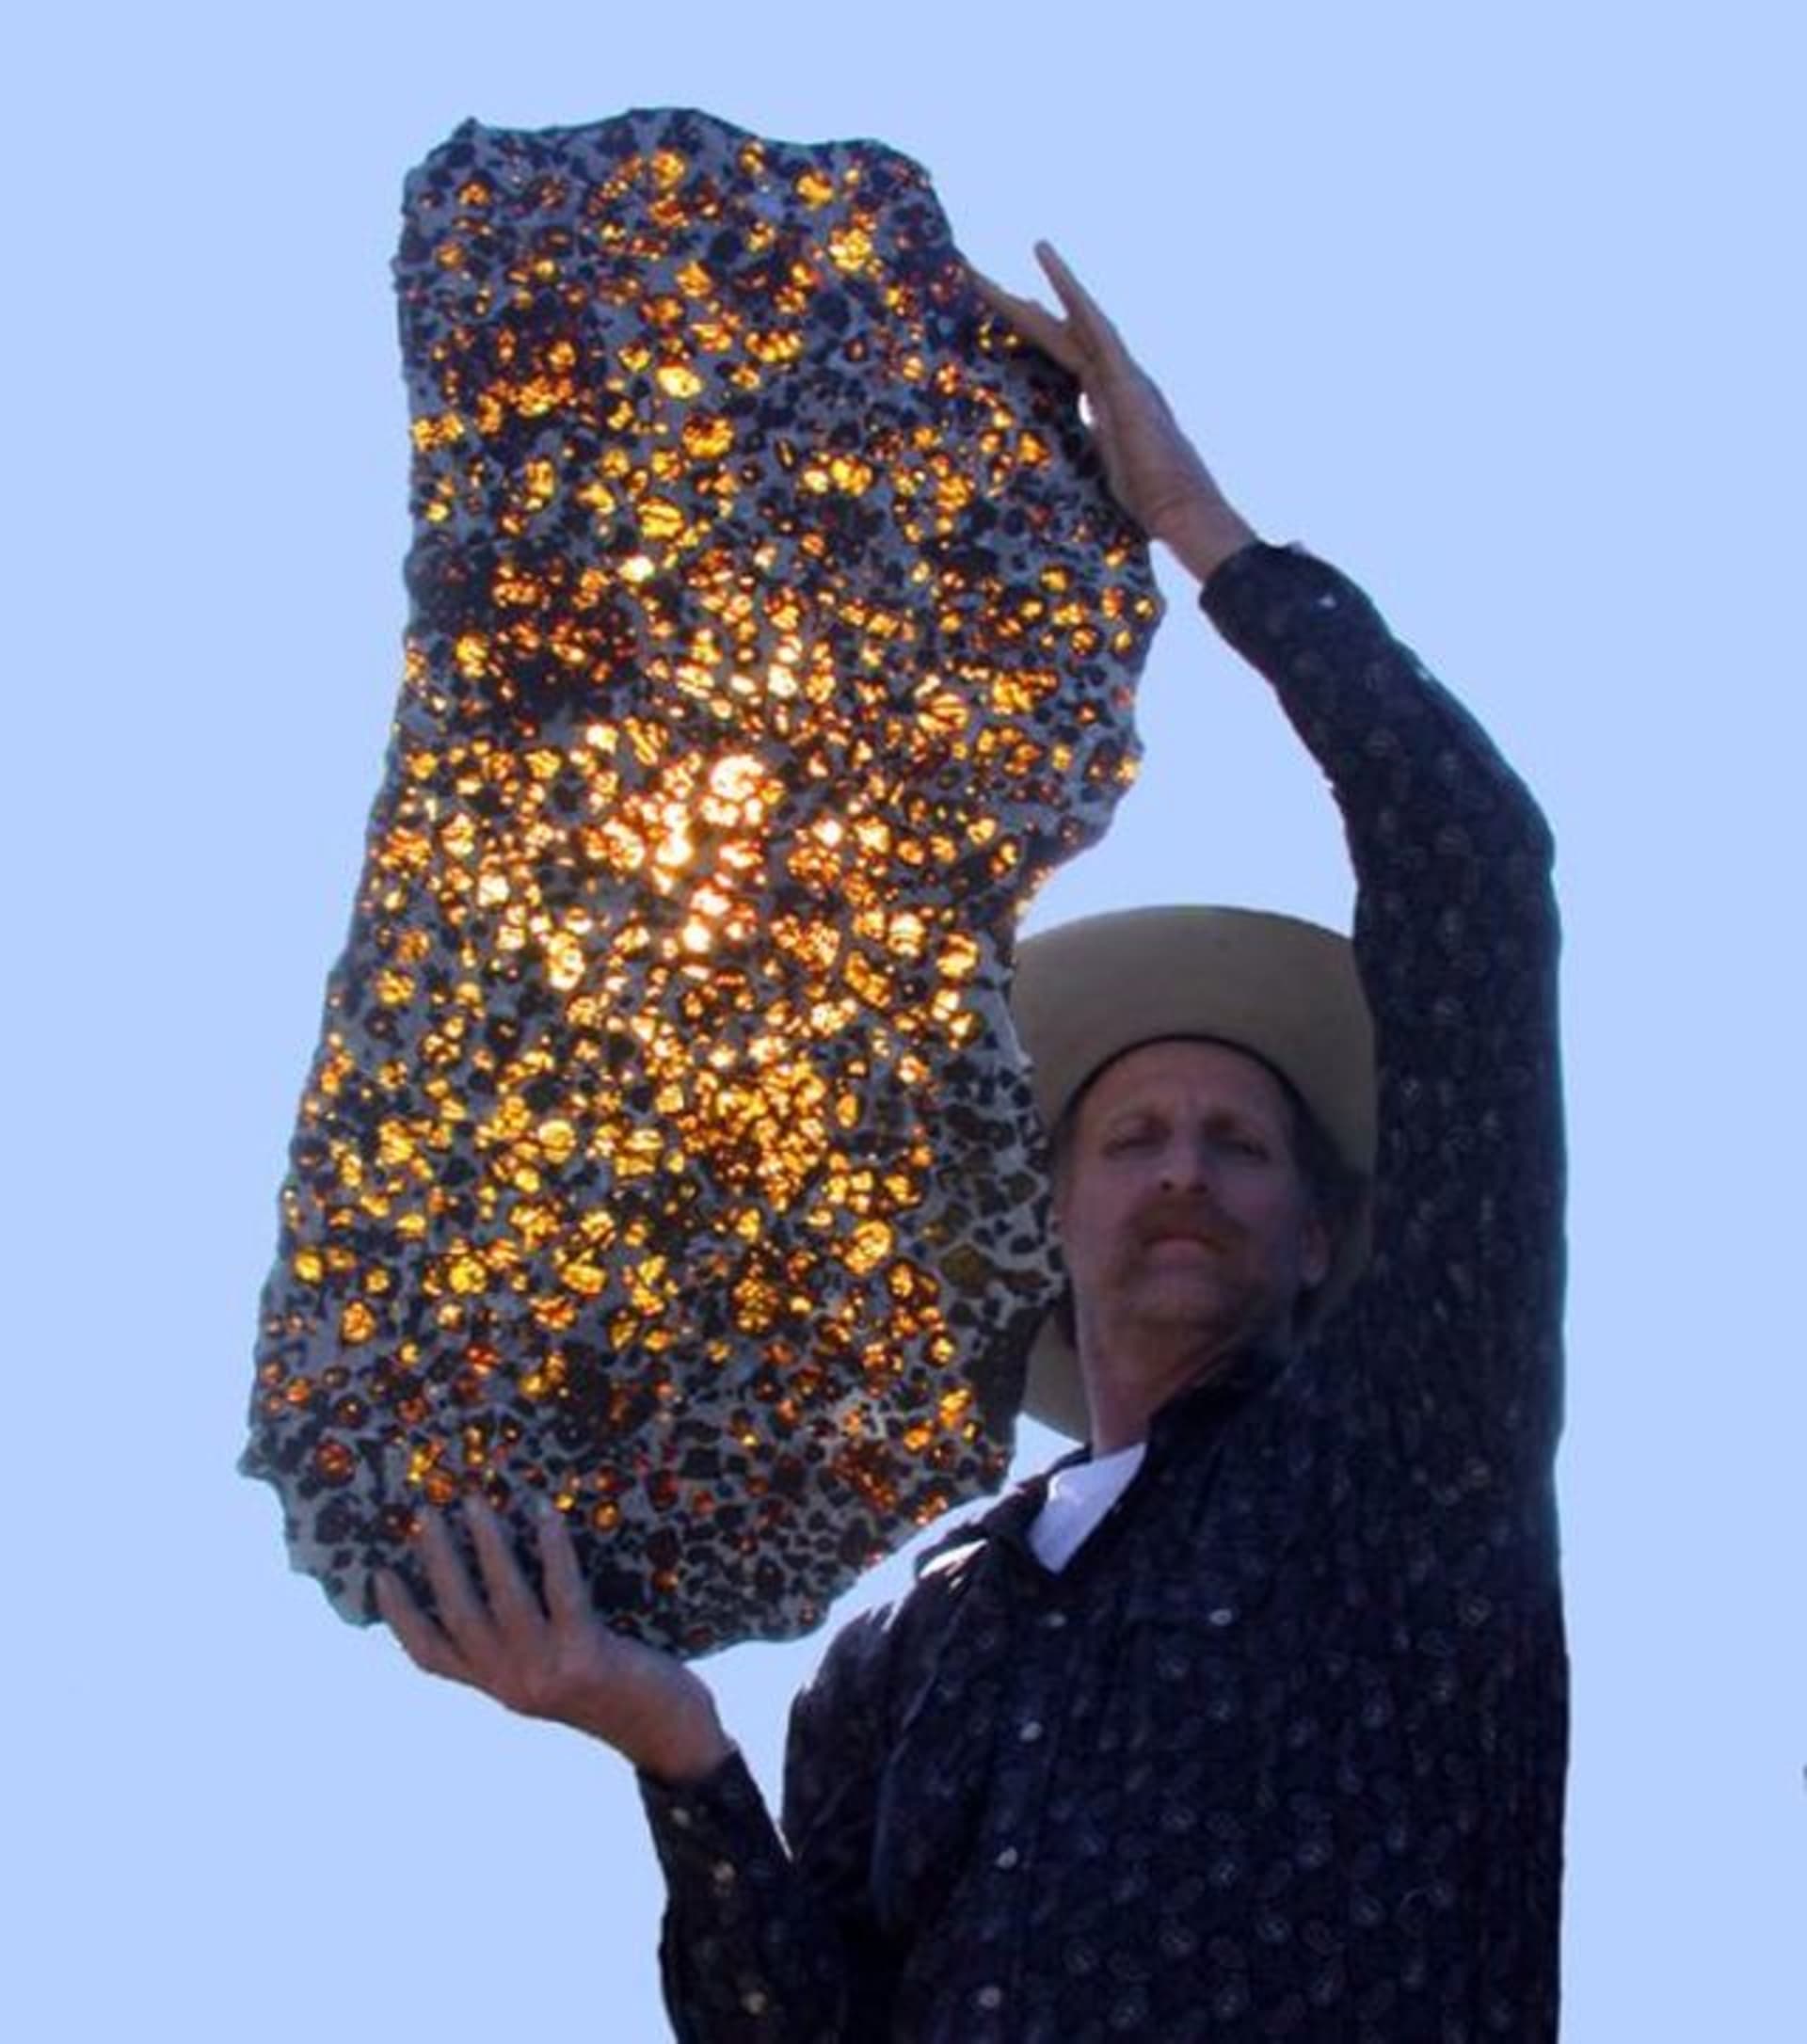 Slavný fukangský meteorit